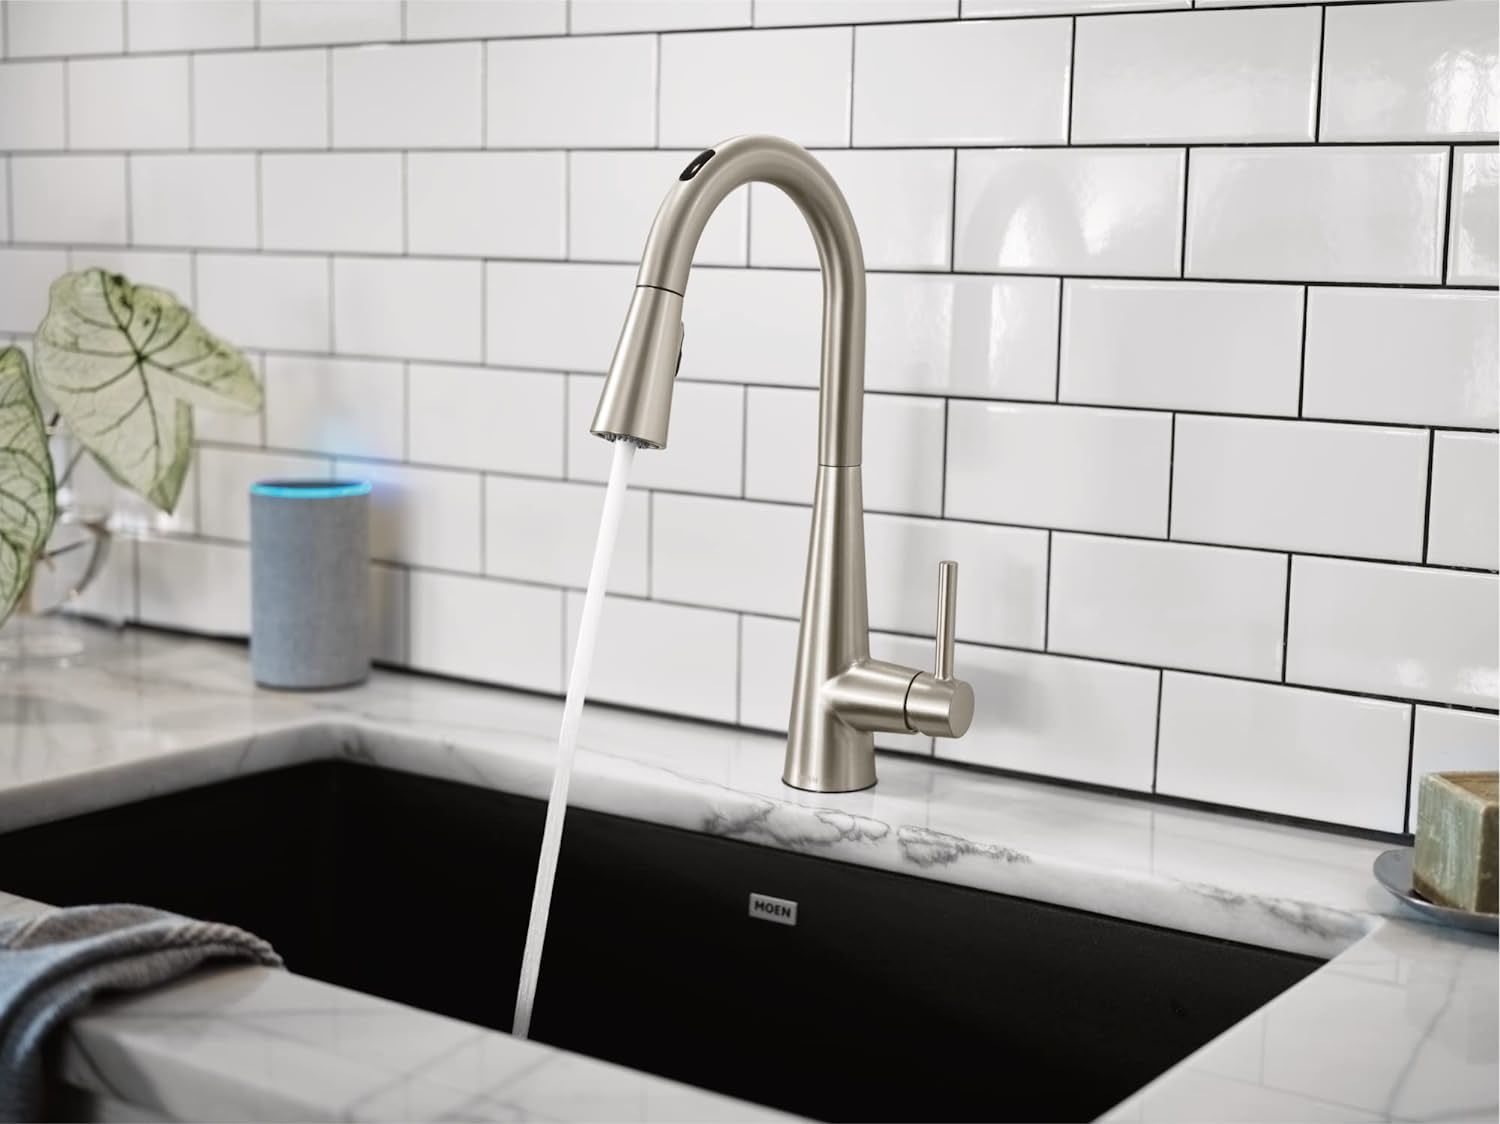 moen sleek touchless kitchen faucet dispensing water